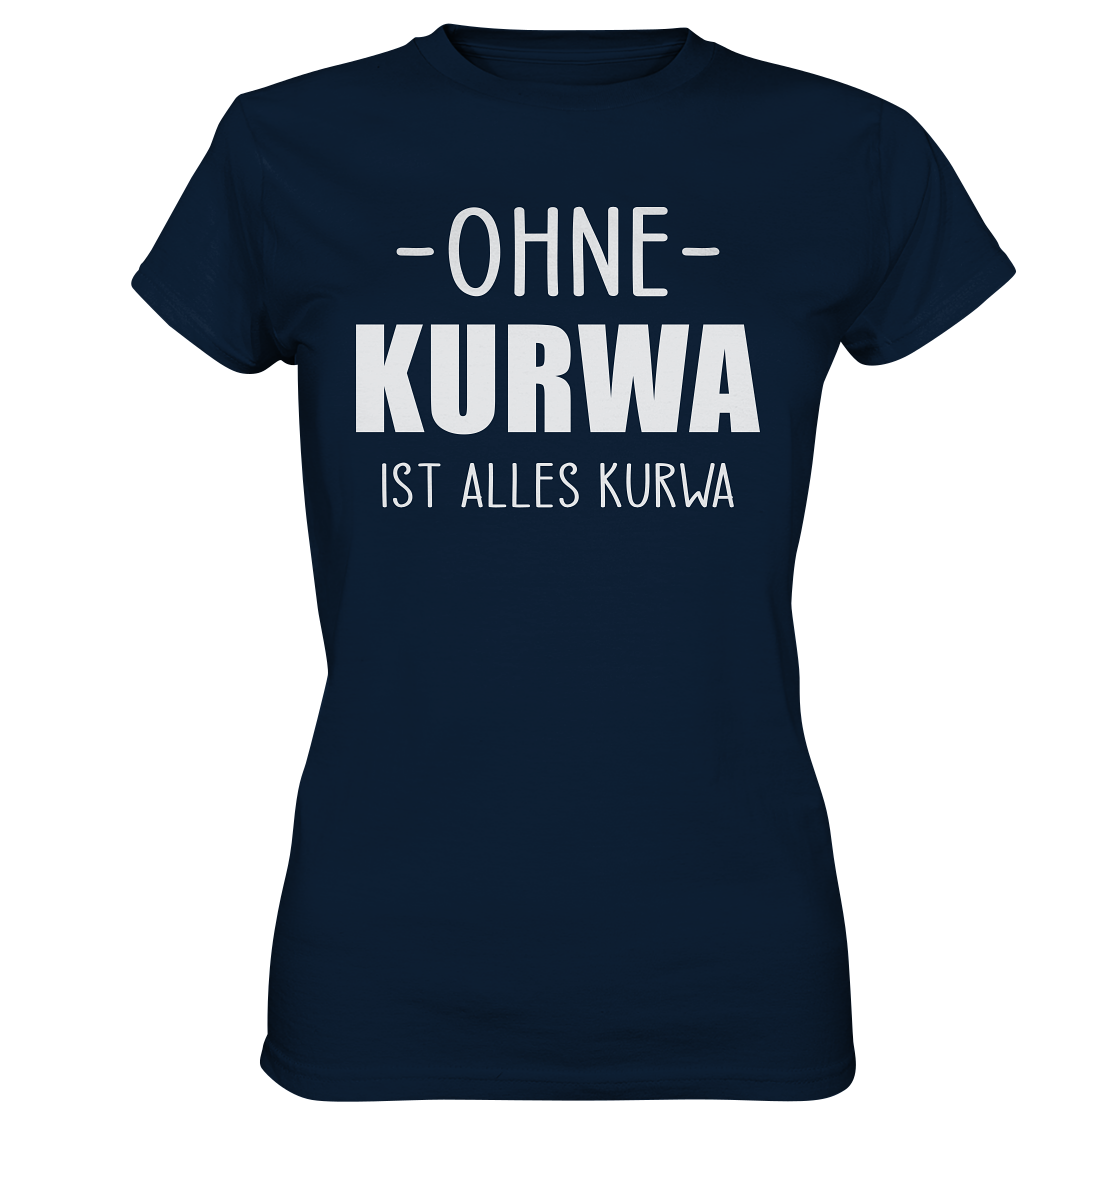 Ohne Kurwa ist alles Kurwa - Ladies Premium Shirt